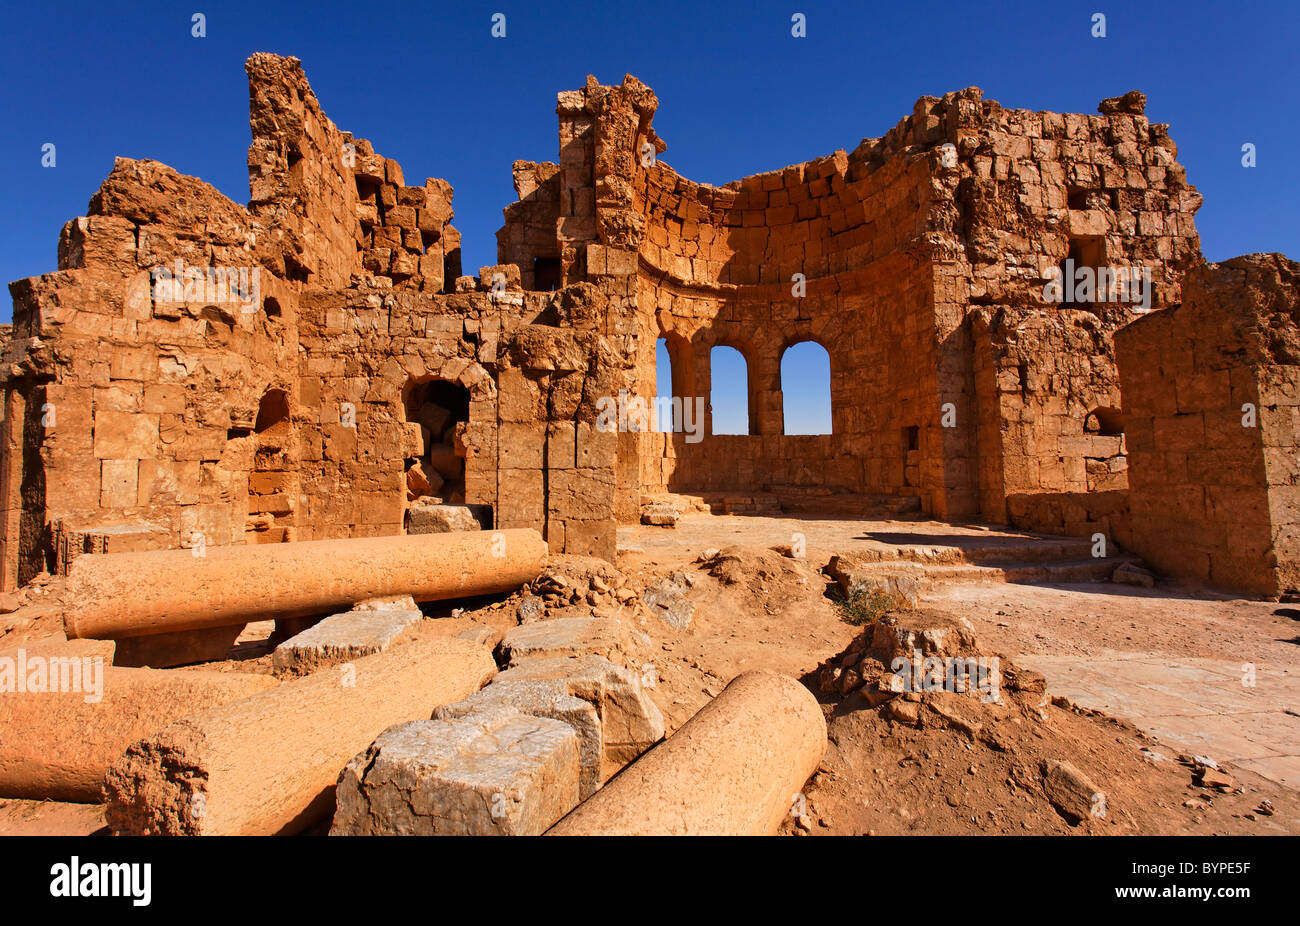 Ruines de l'Eglise au désert de ruines, la Syrie Rasafa Banque D'Images